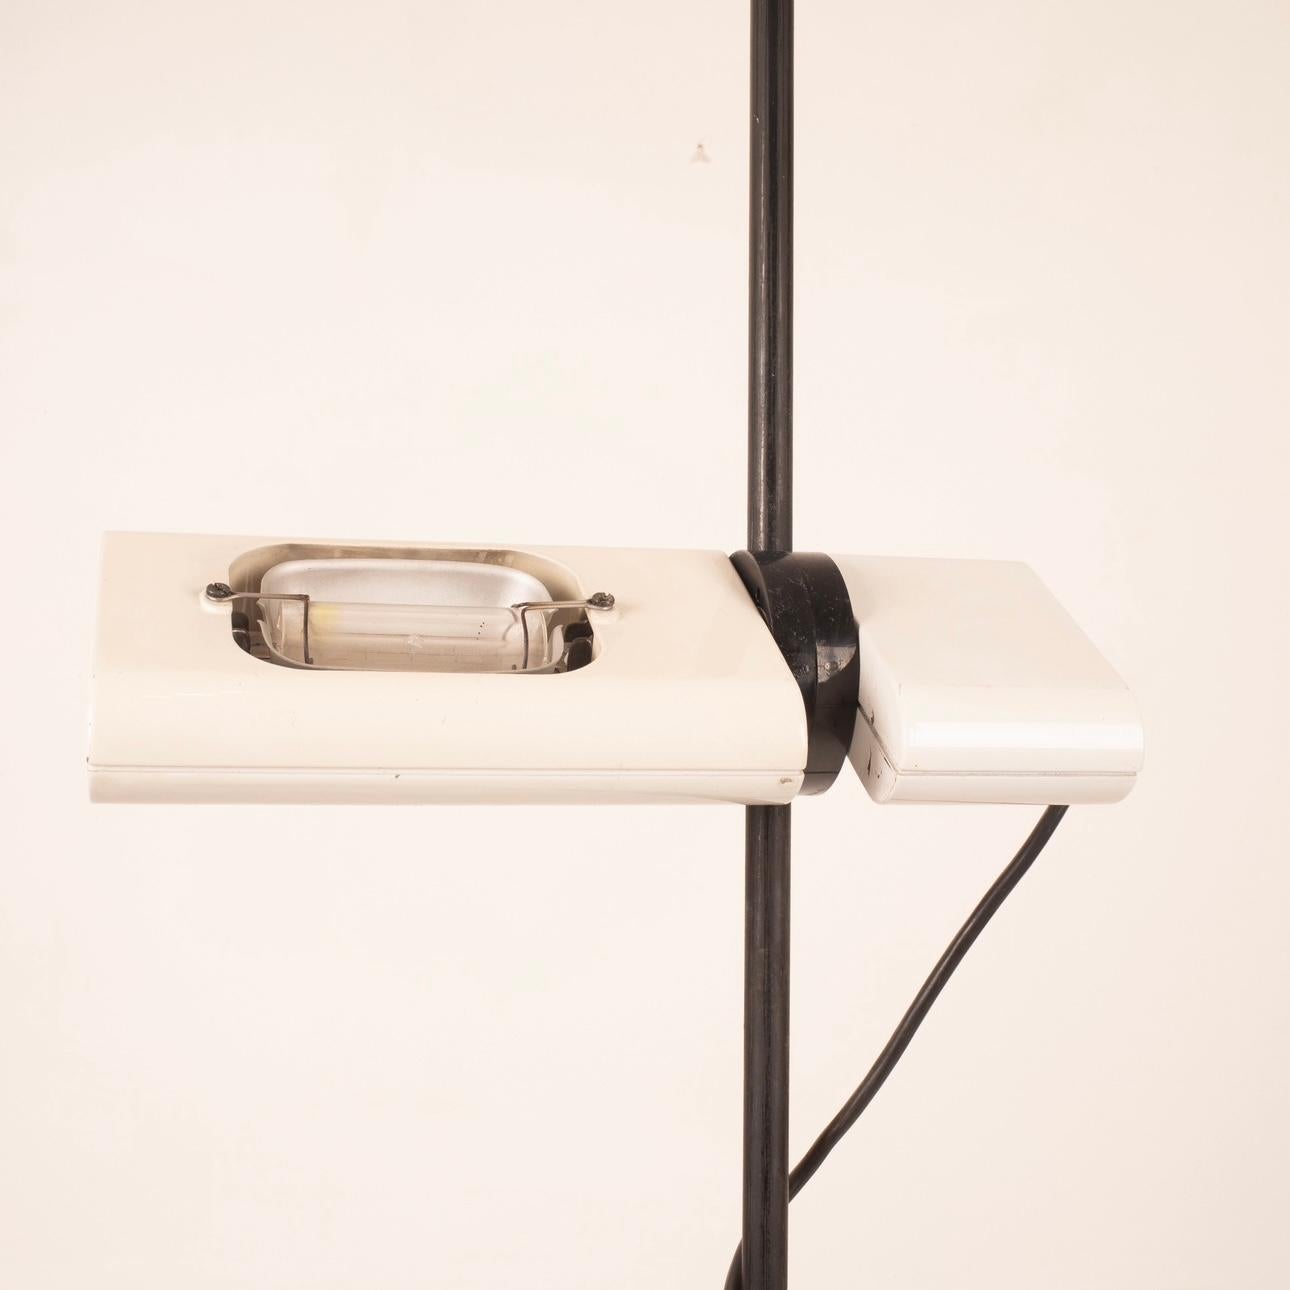 Die Stehleuchte Aton mod. Aton, 1980 von Ernesto Gismondi für Artemide entworfen, ist ein hervorragendes Beispiel für zeitgenössisches italienisches Design.
Diese Stehleuchte ist eine Kombination aus Form, Funktionalität und Eleganz.
Mit